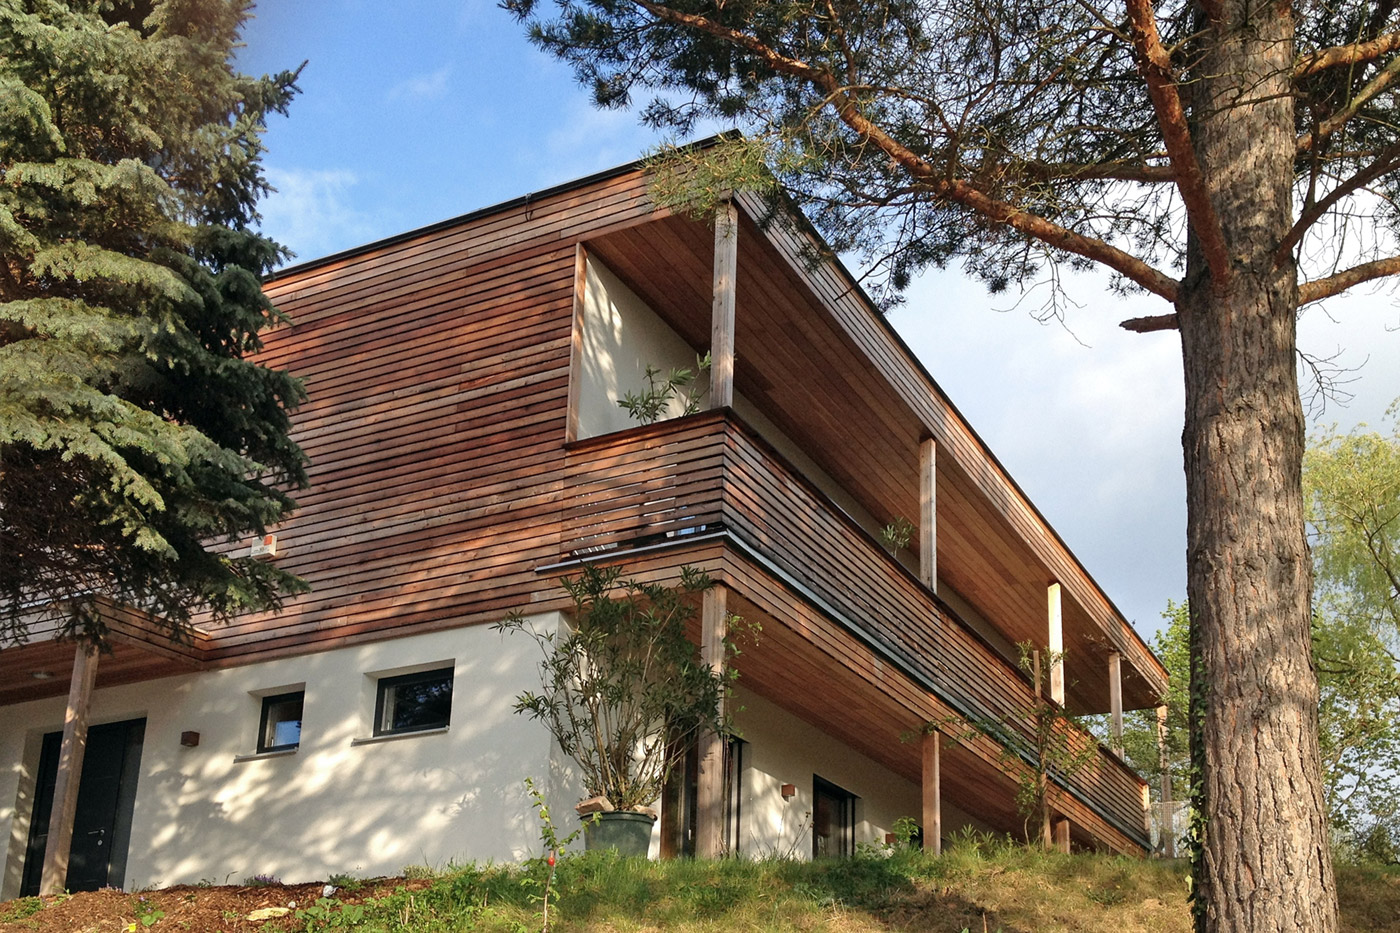 Haus am Hang - Planung und Design von Architekt Stefan Toifl